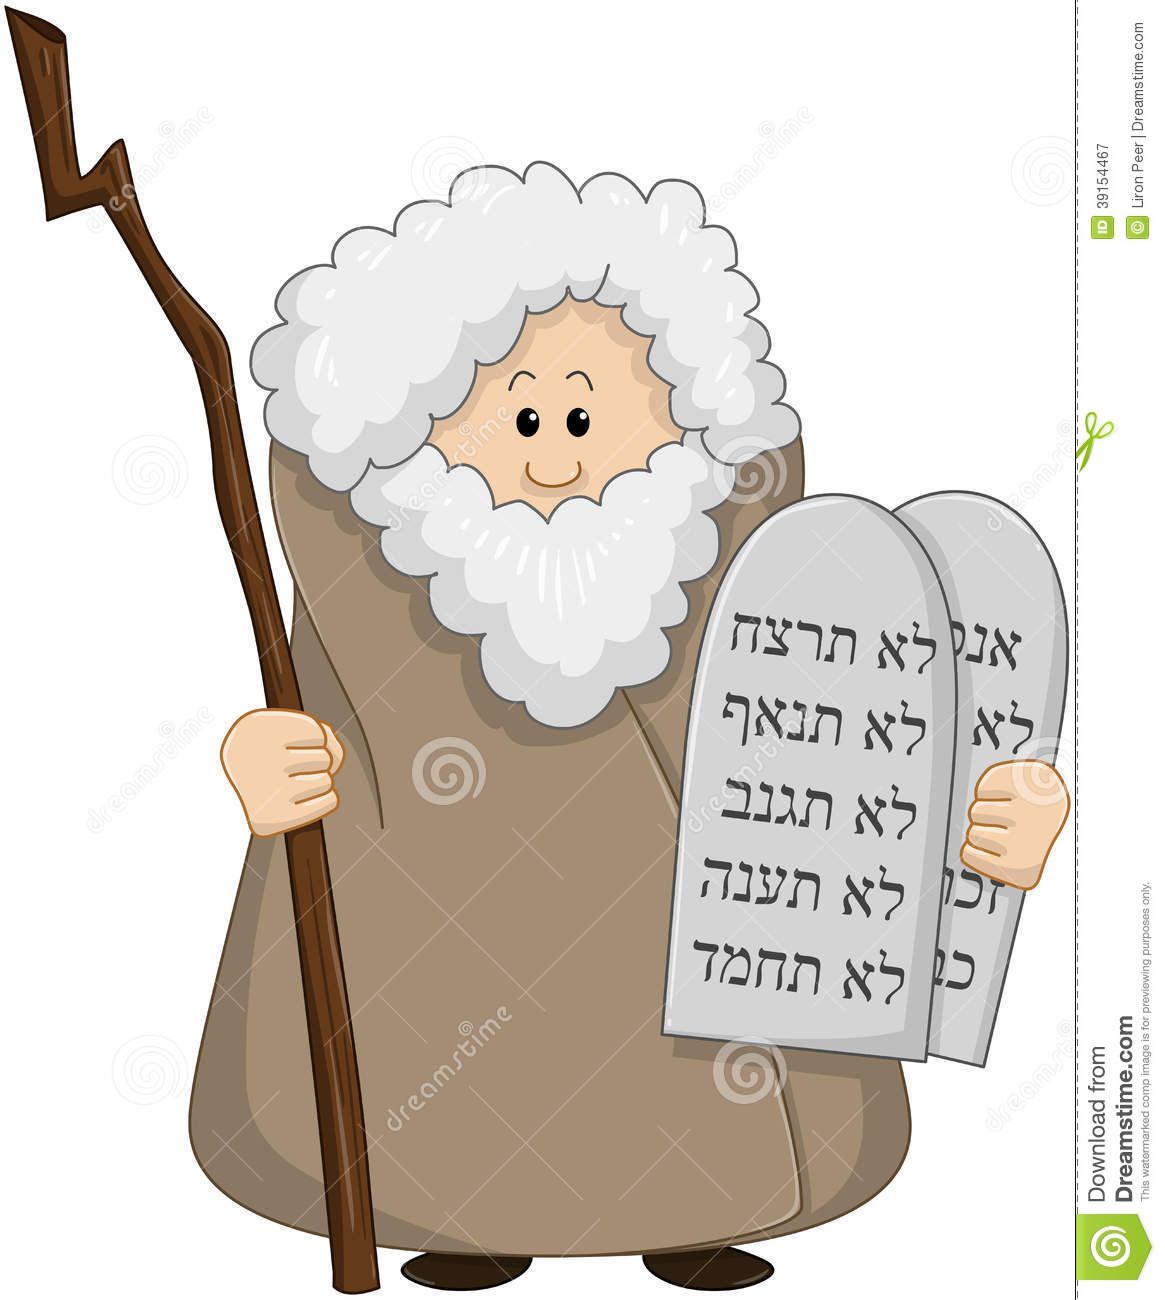 ten commandments clipart cartoon